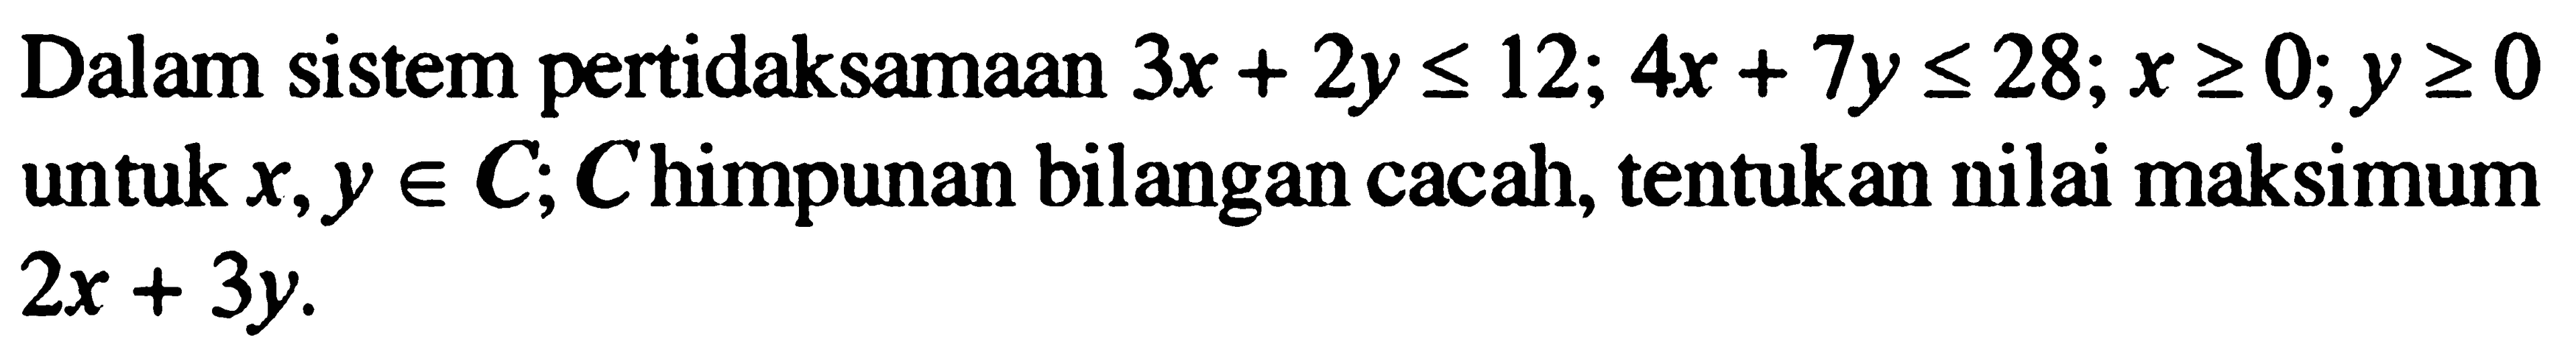 Dalam sistem peridaksamaan 3x+2y<=12; 4a+7y<=28; x>=0; y>=0 untuk x,y e C, C himpunan bilangan cacah, tentukan nilai maksimum dari 2x+3y.